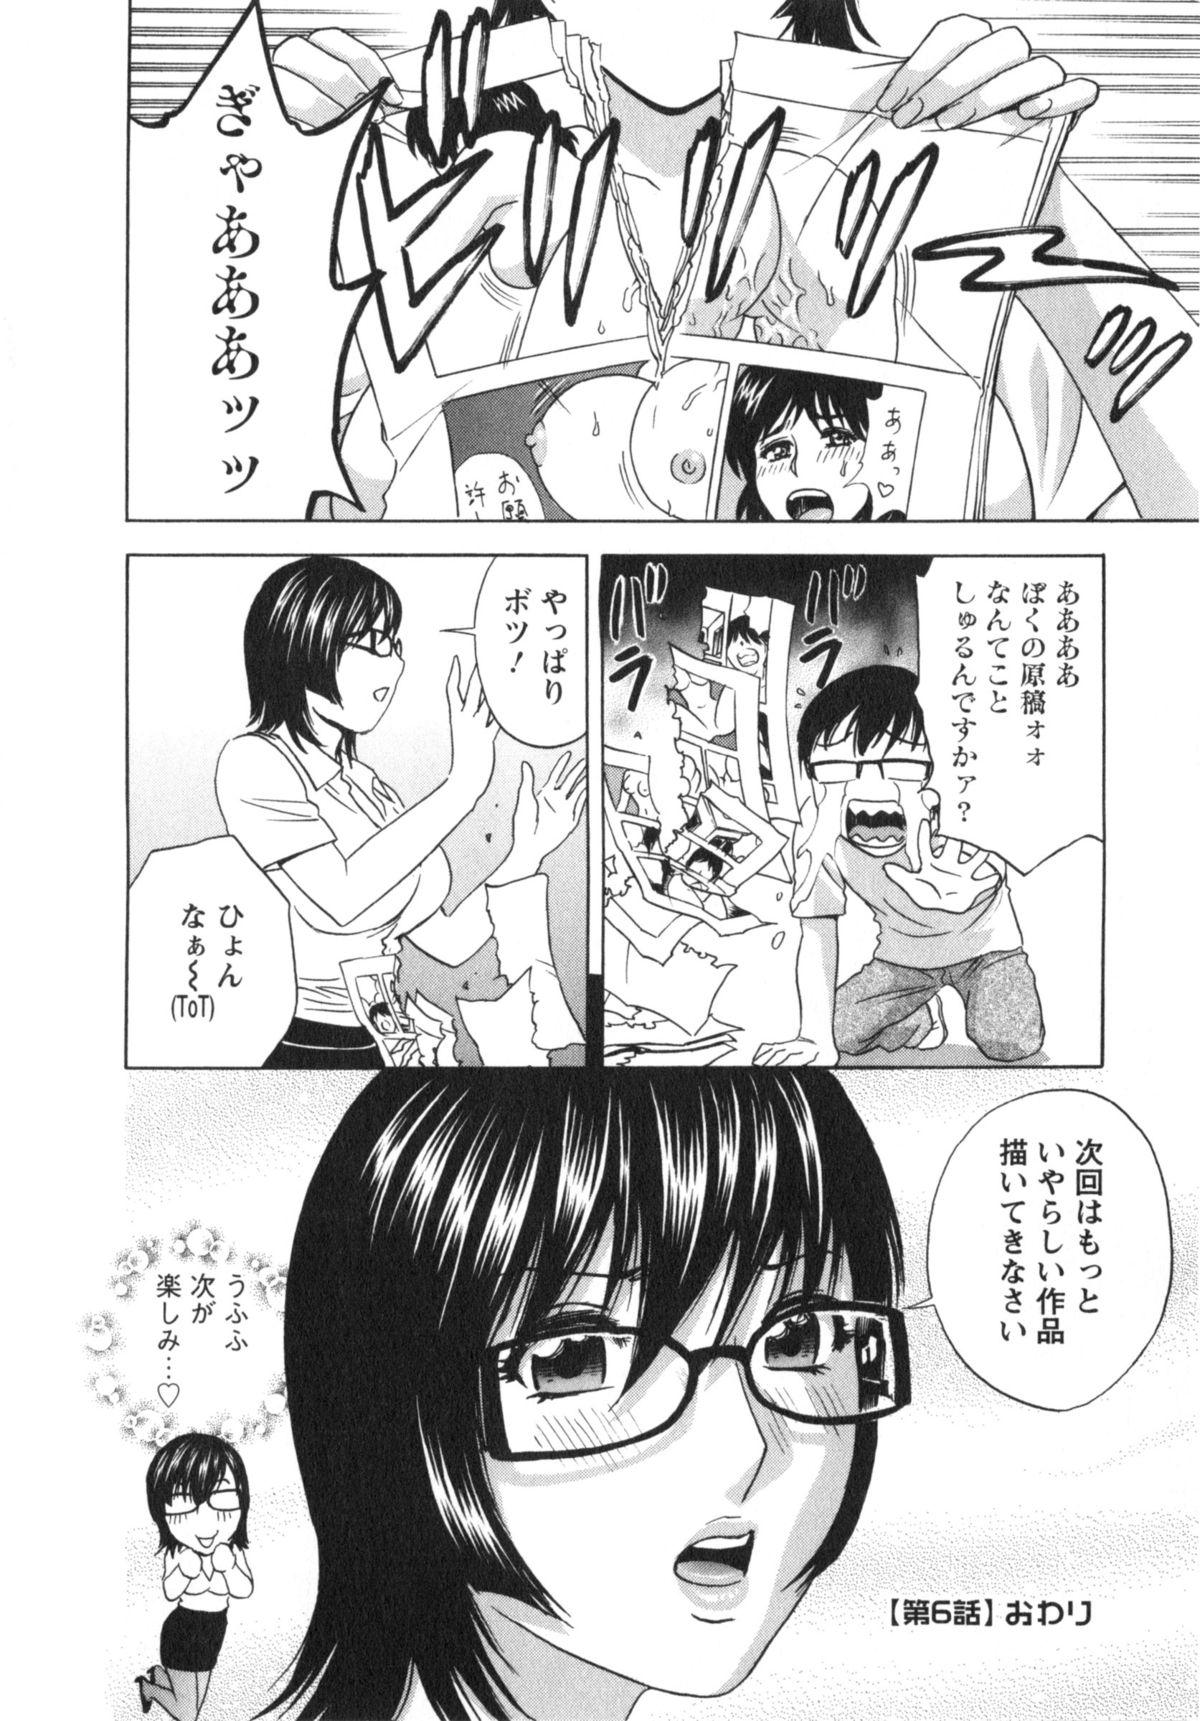 Manga no youna Hitozuma to no Hibi - Days with Married Women such as Comics. 116